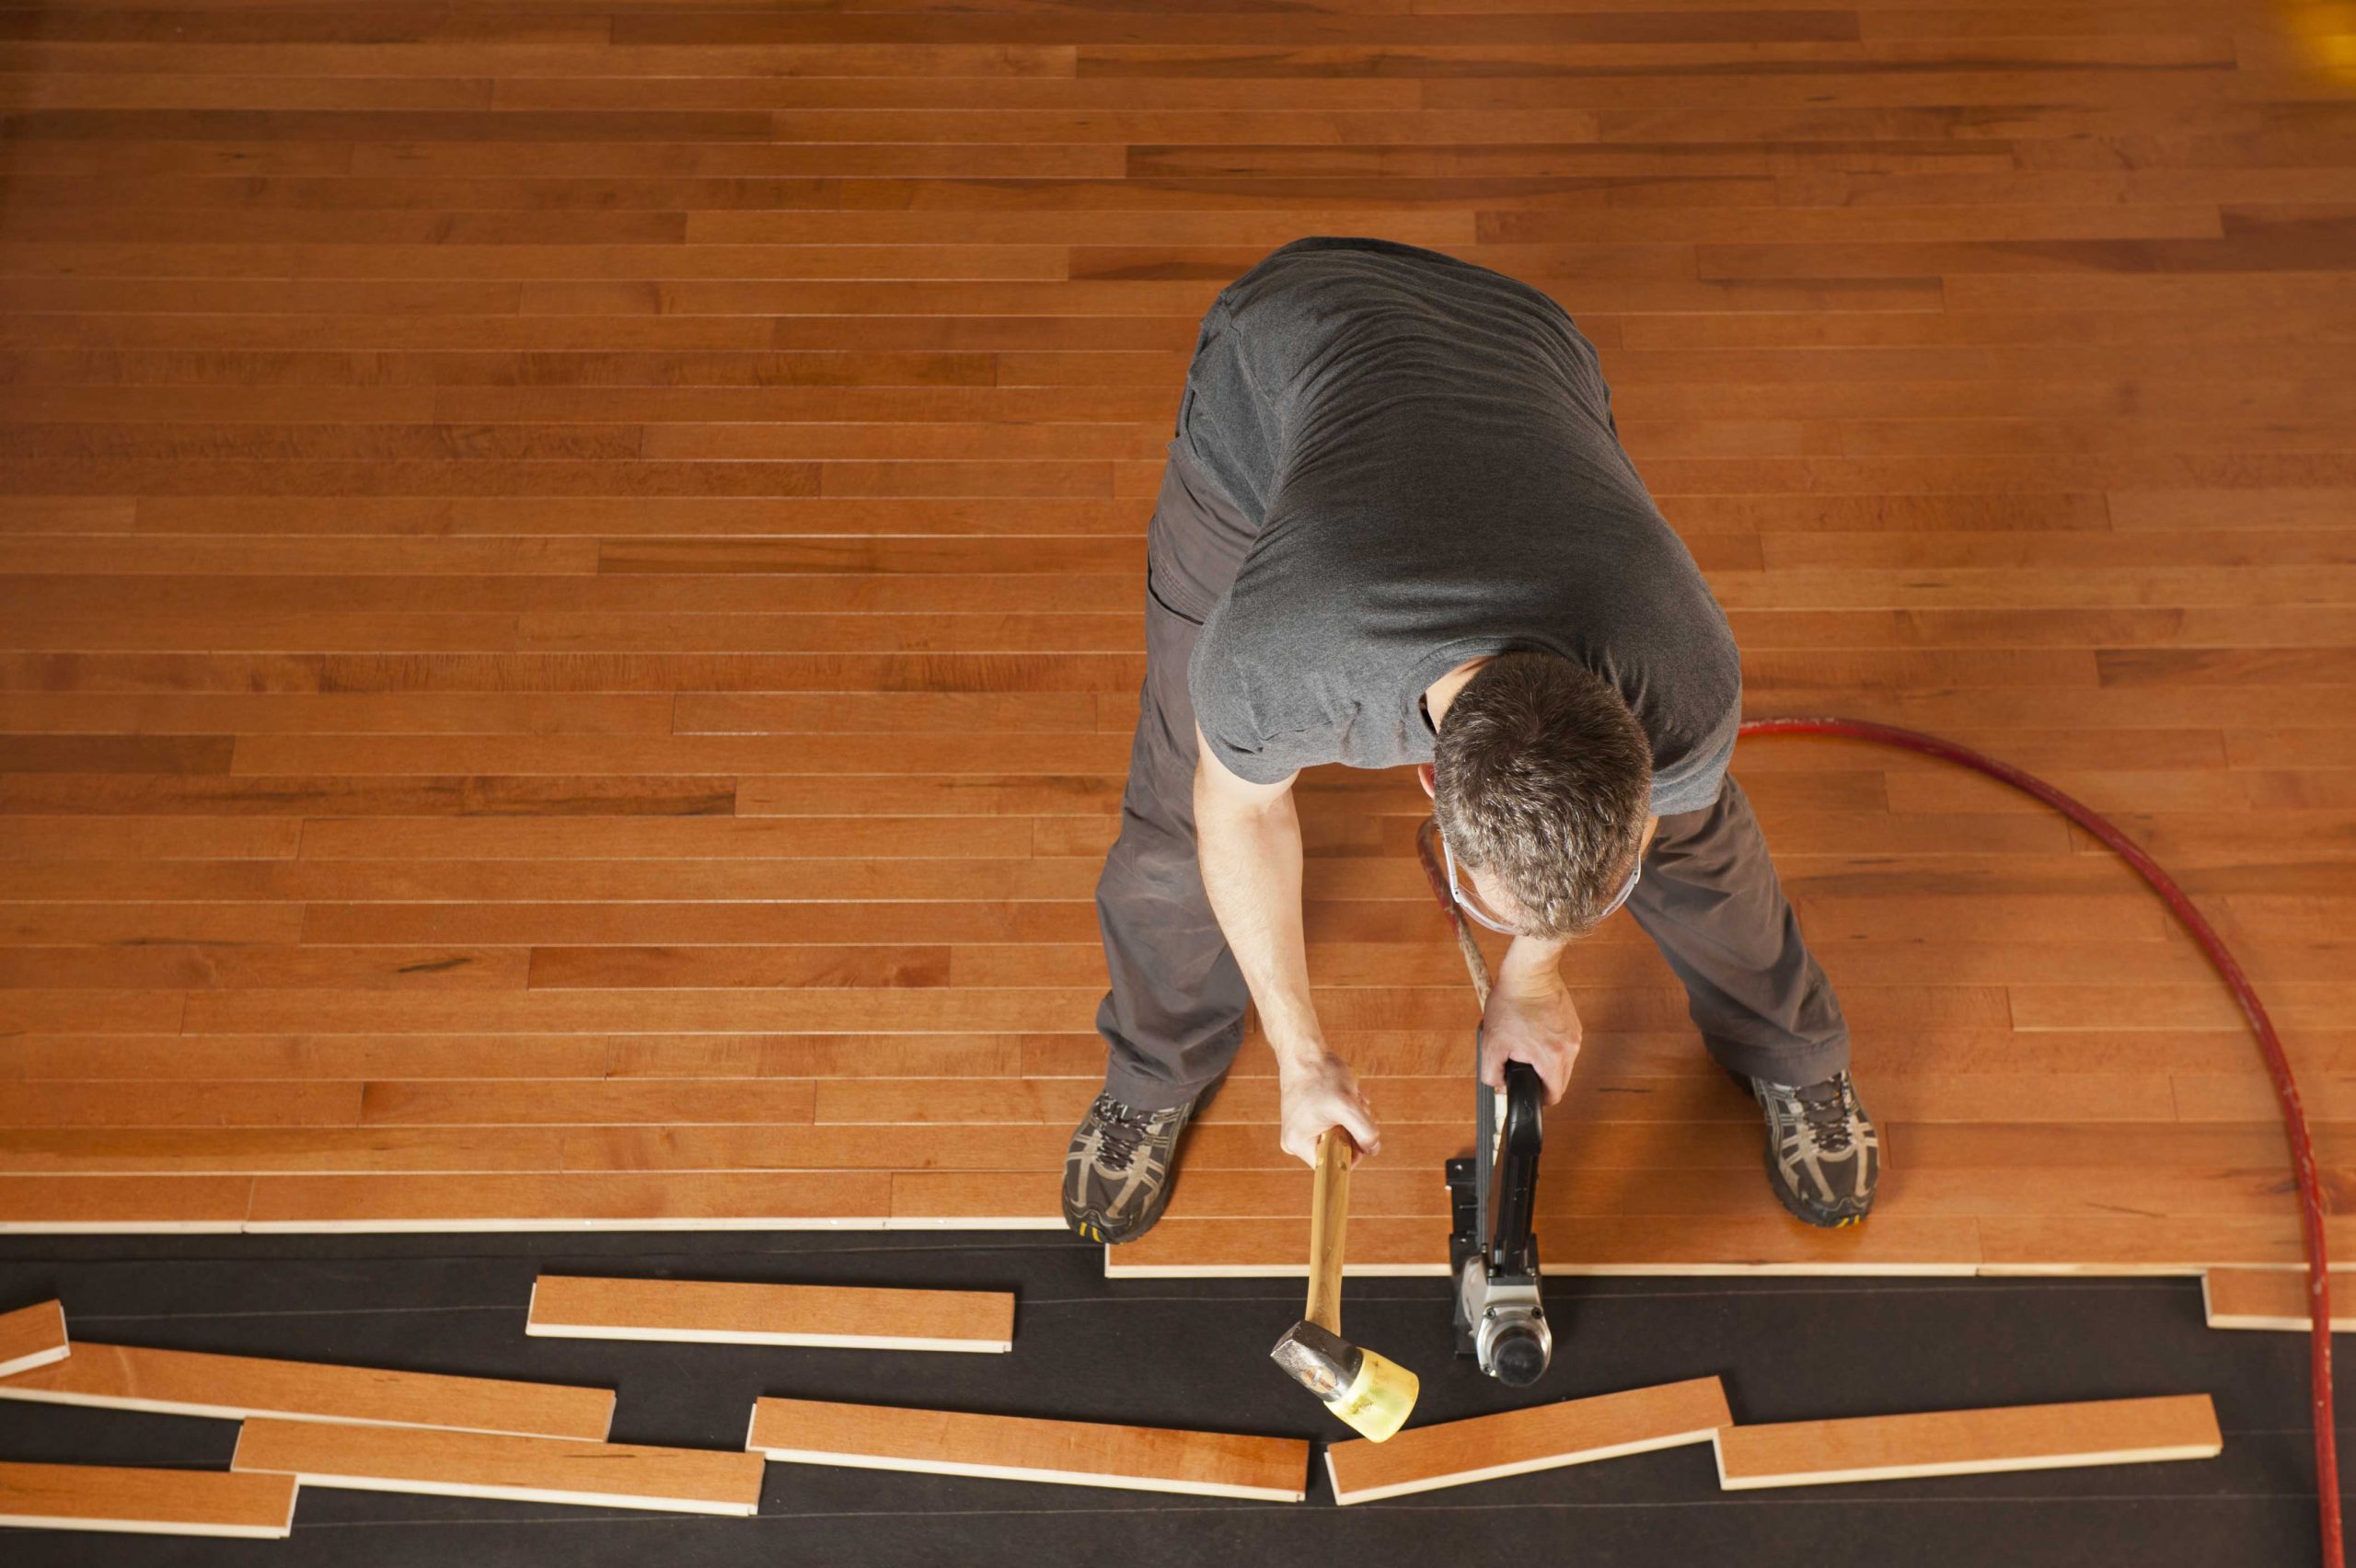 choose floor repairs: